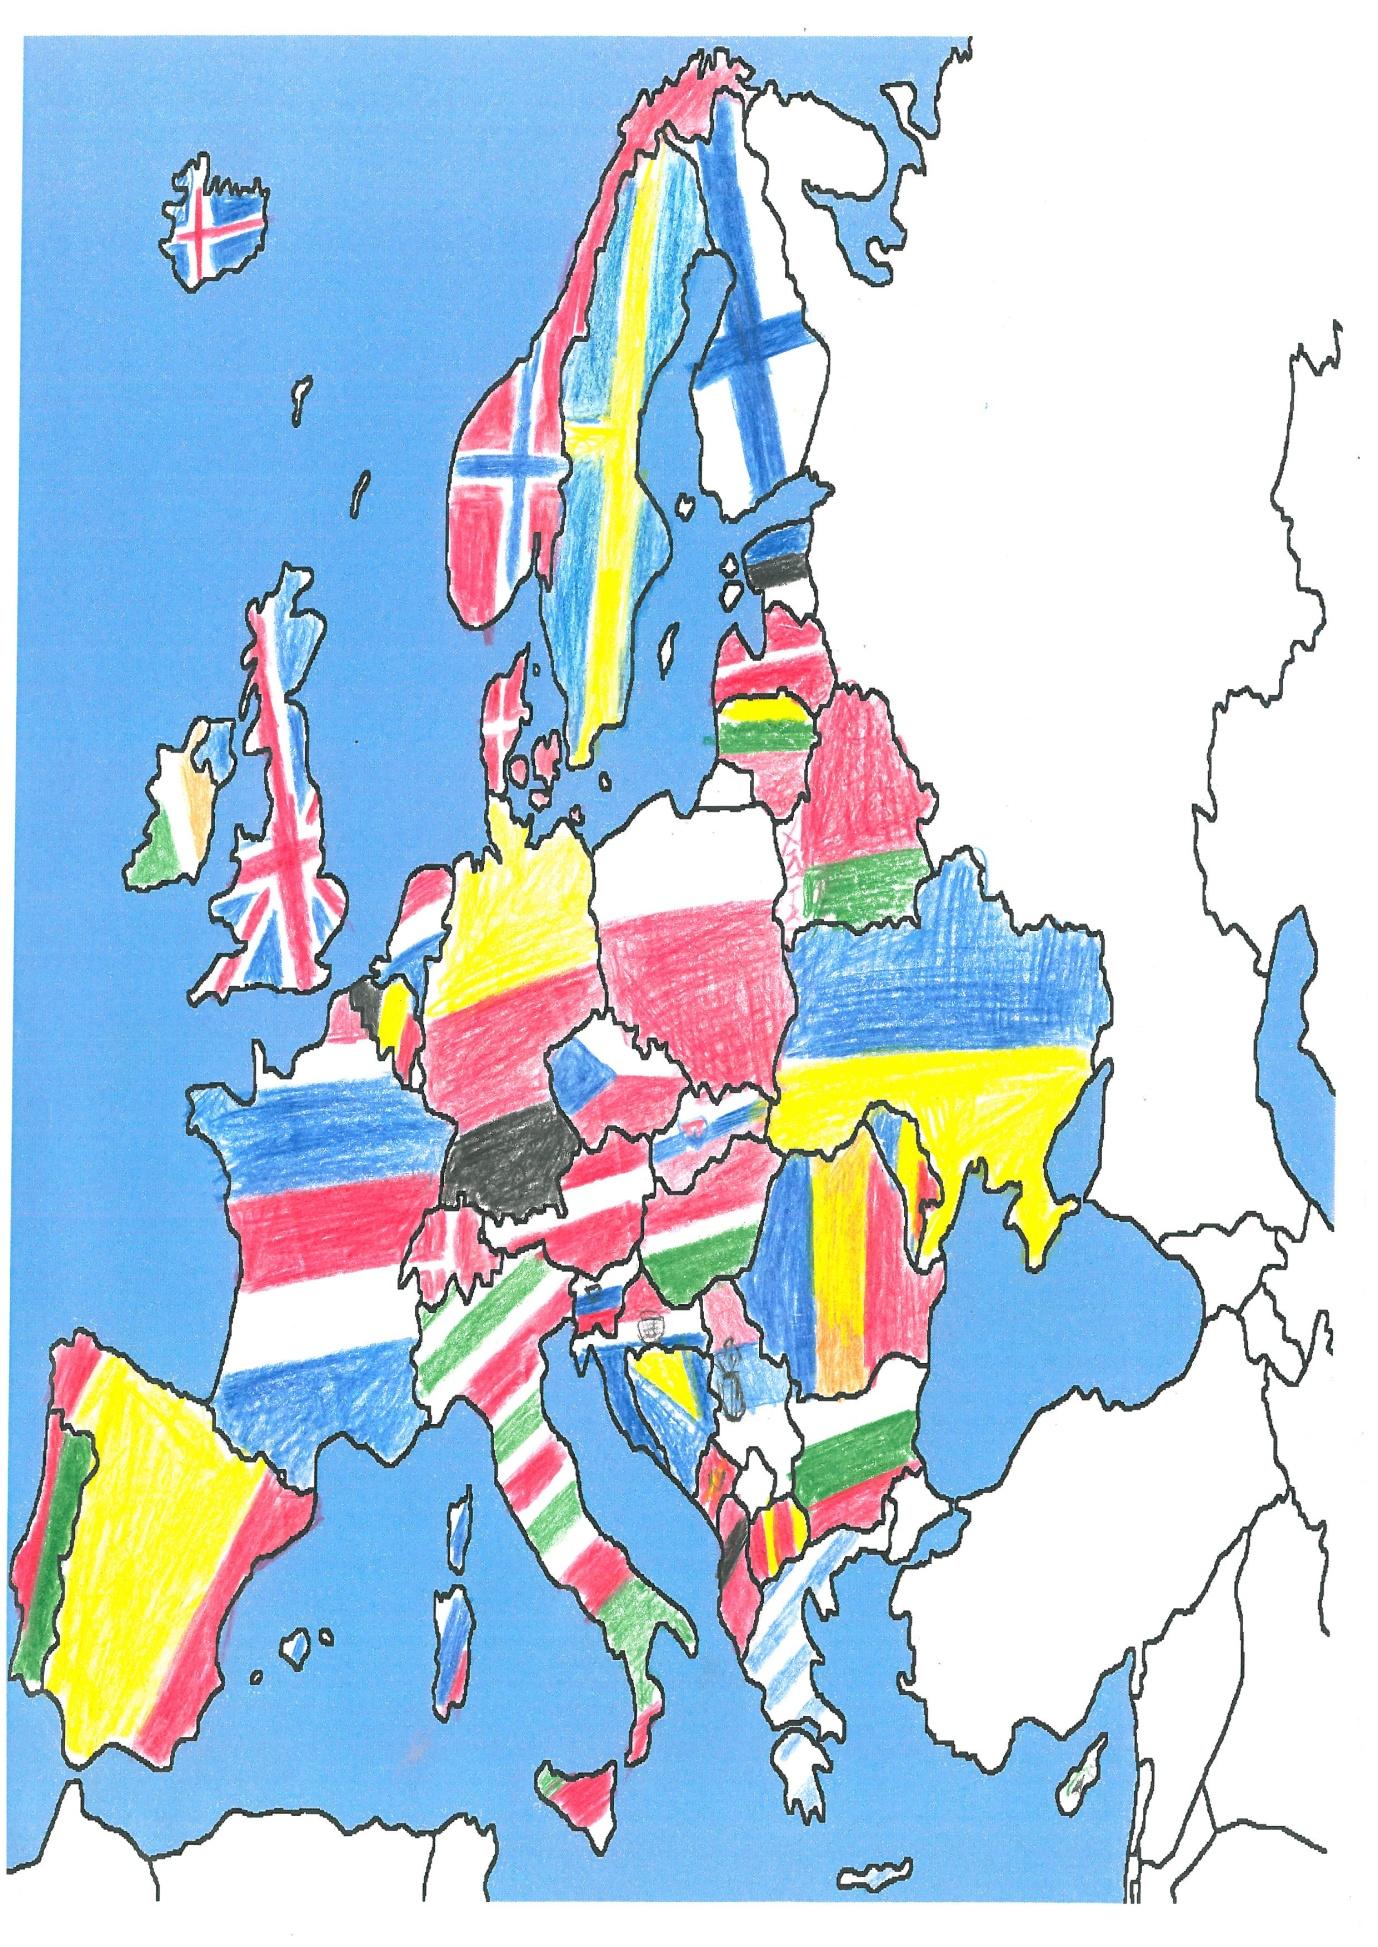 Τα παιδιά ζωγραφίζουν τον χάρτη της Ευρώπης